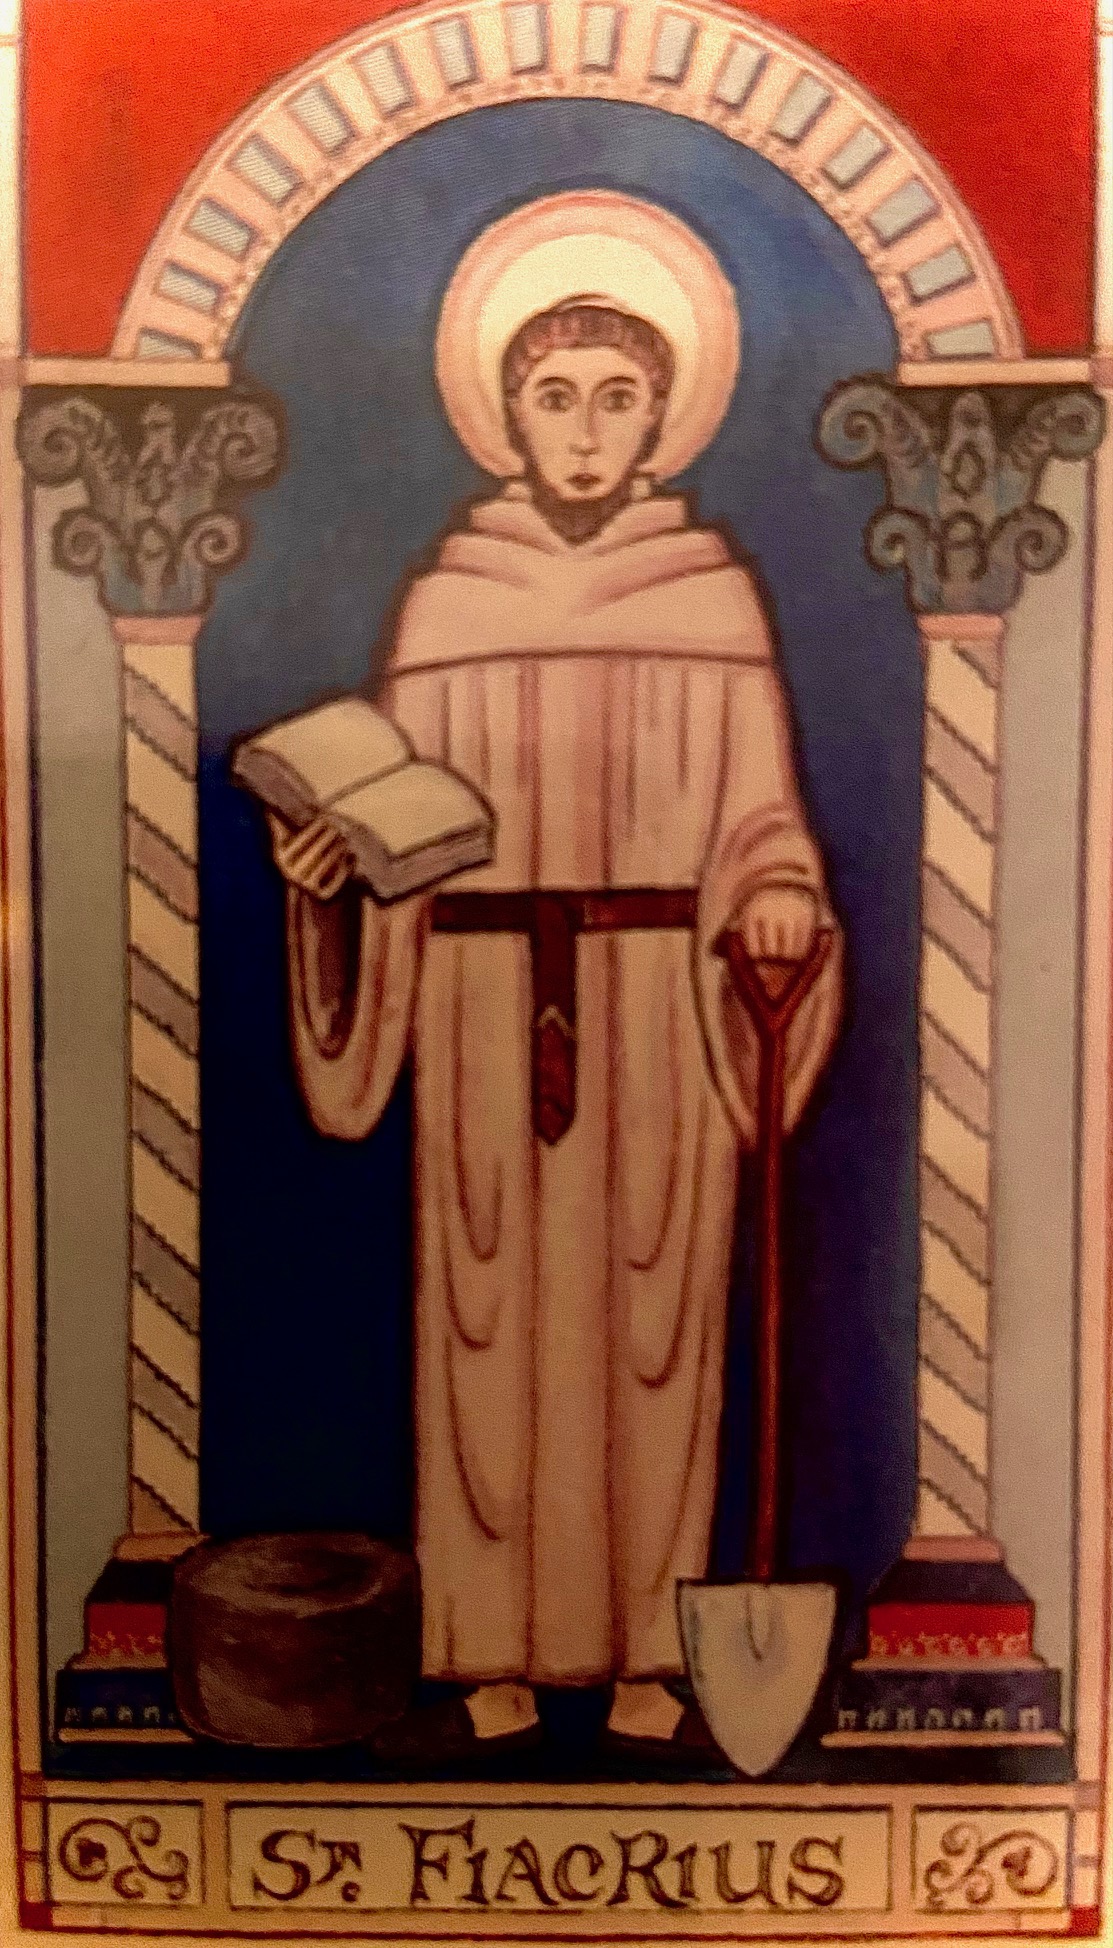 St. Fiacrius - Schutzpatron der Proktologen